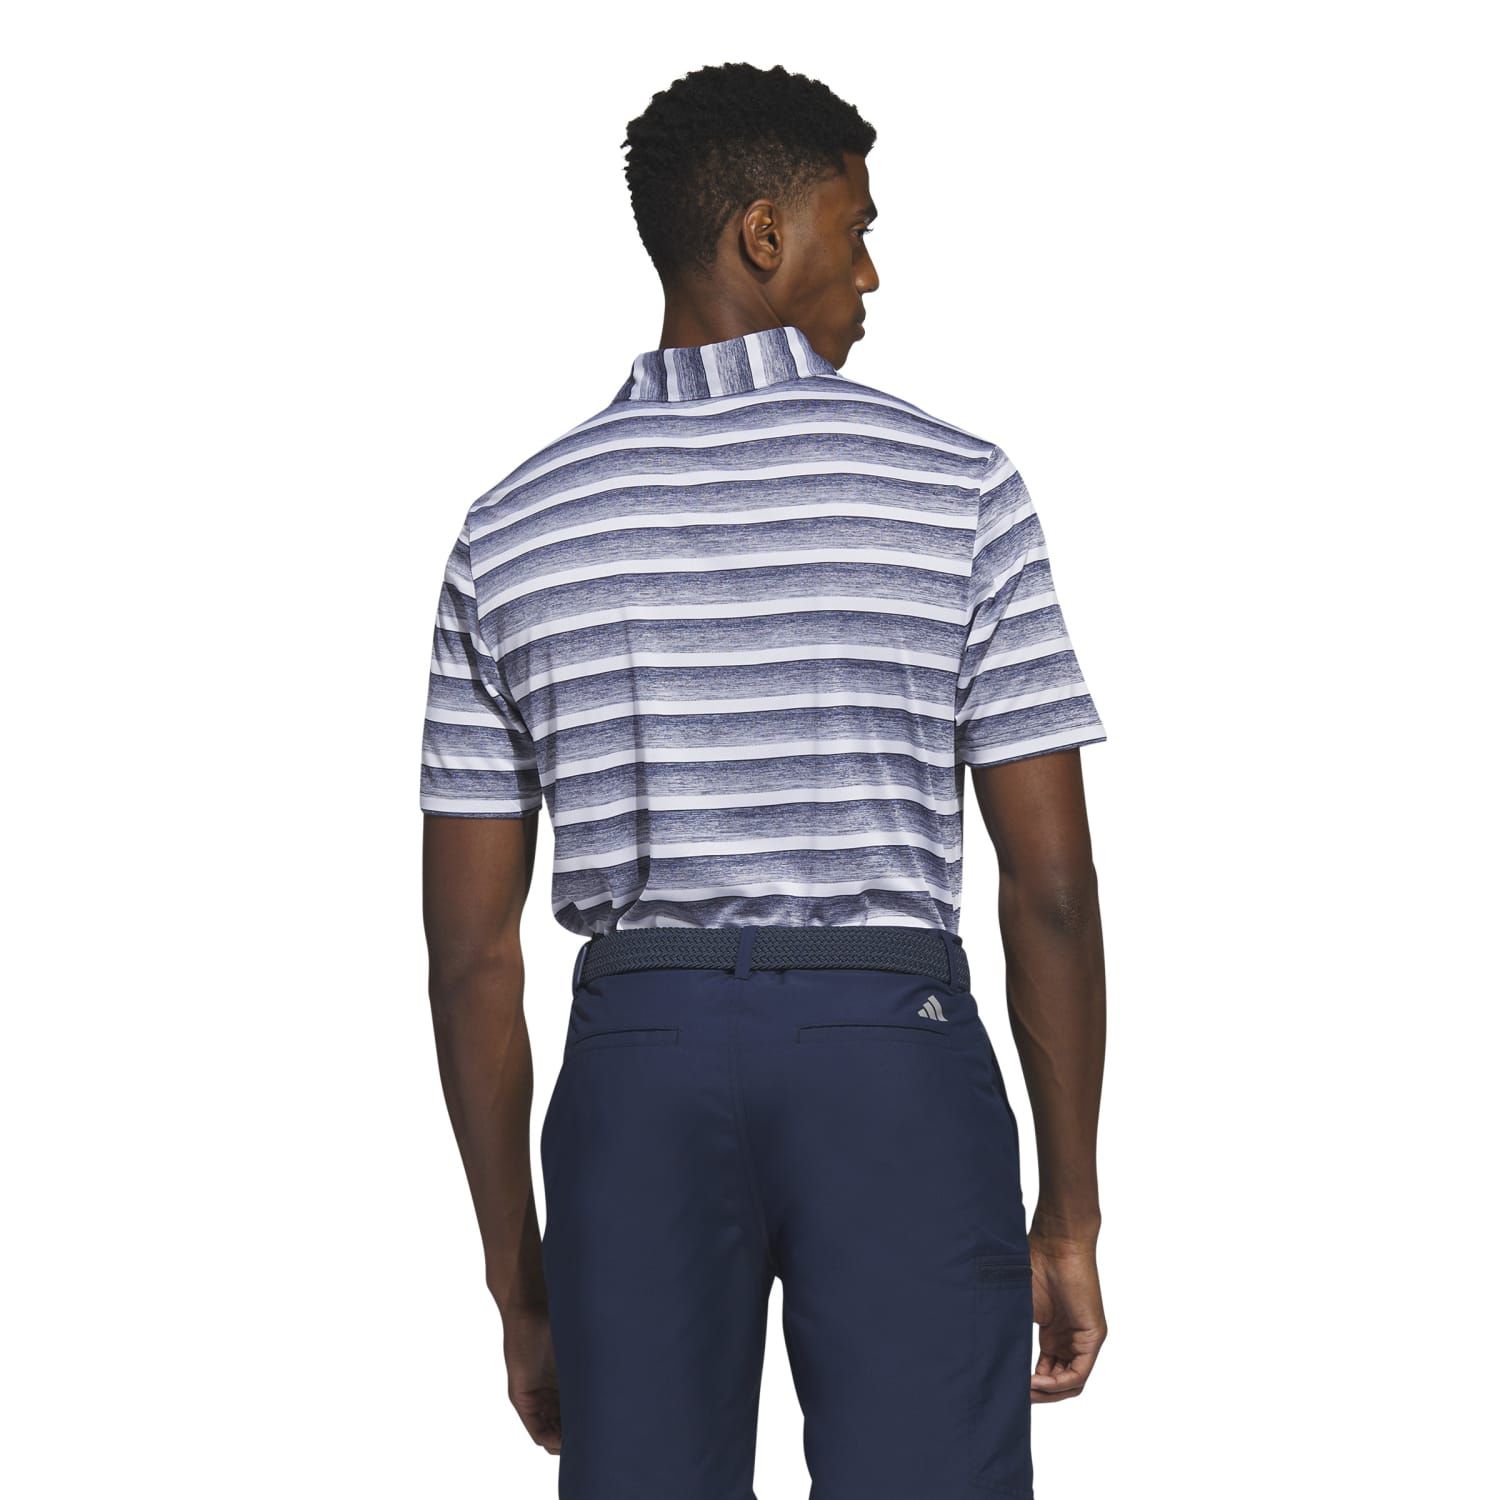 Мужская рубашка-поло для гольфа в двухцветную полоску adidas